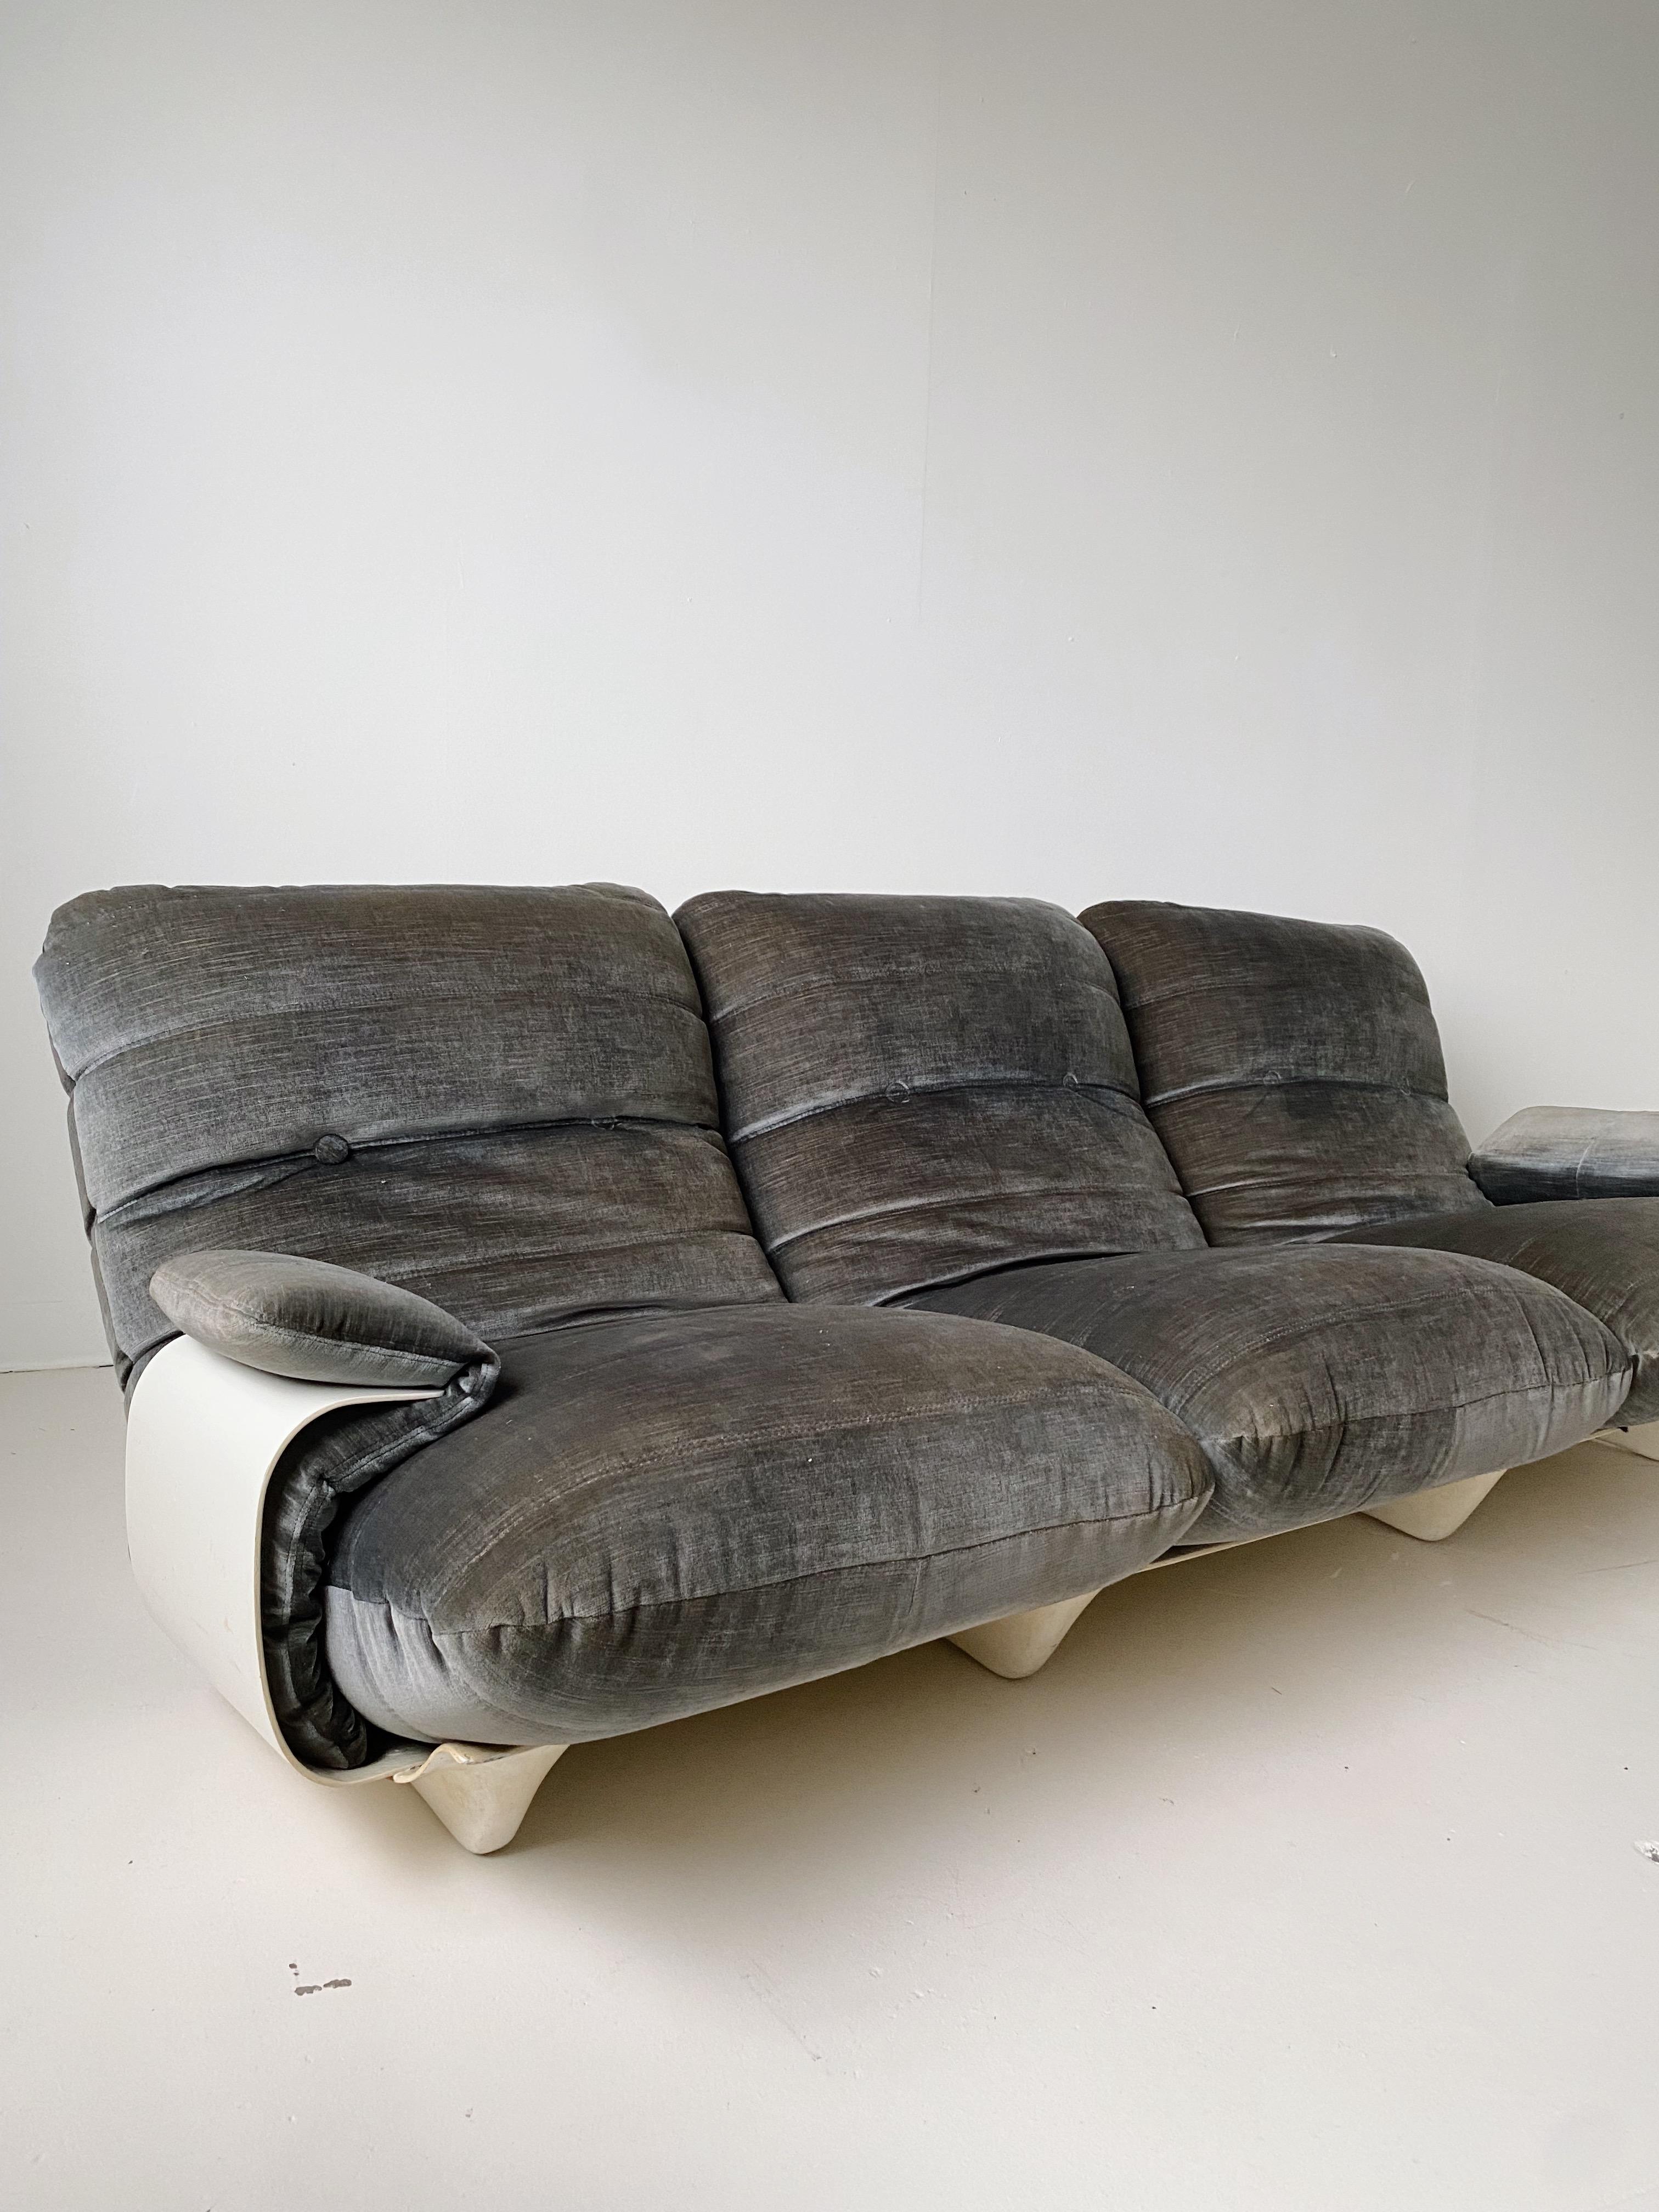 3-Sitzer Marsala Sofa von Michel Ducaroy für Ligne Roset, 70er Jahre

Mit einem seltenen weißen Glasfasersockel und grauen Velourskissen.

//

Abmessungen:
86 